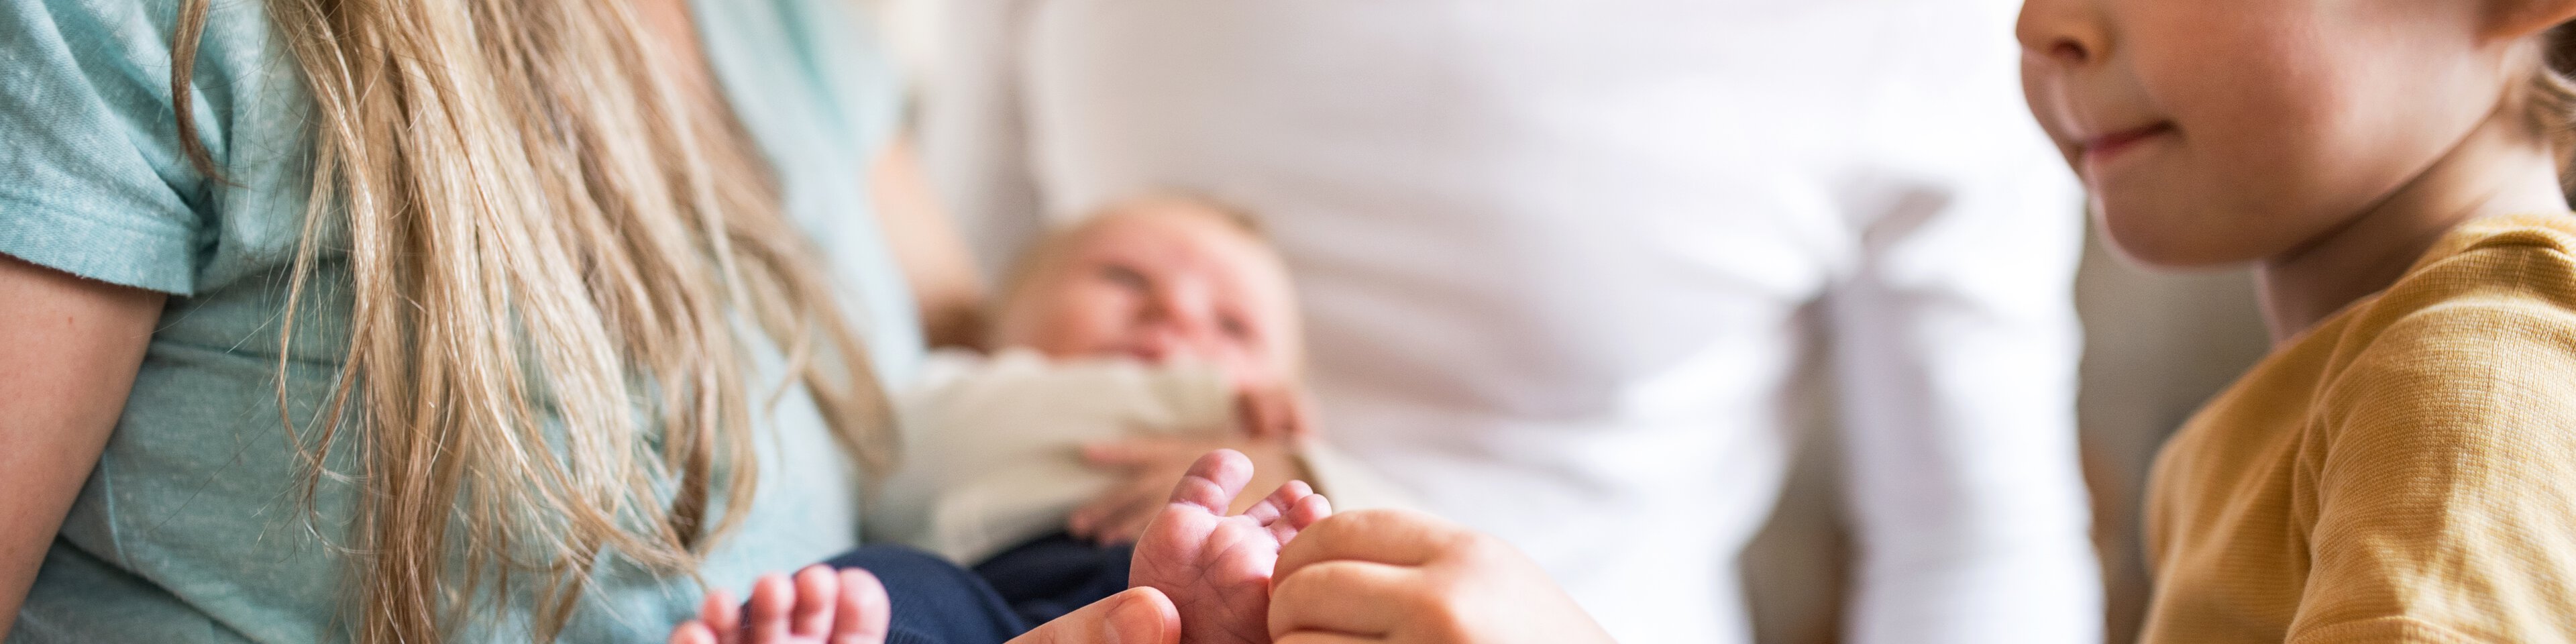 Eine Mutter hat ein Baby auf dem Arm und ein kleiner Junge drückt den kleinen Zeh des Babys | © Halfpoint - Getty Images/iStockphoto